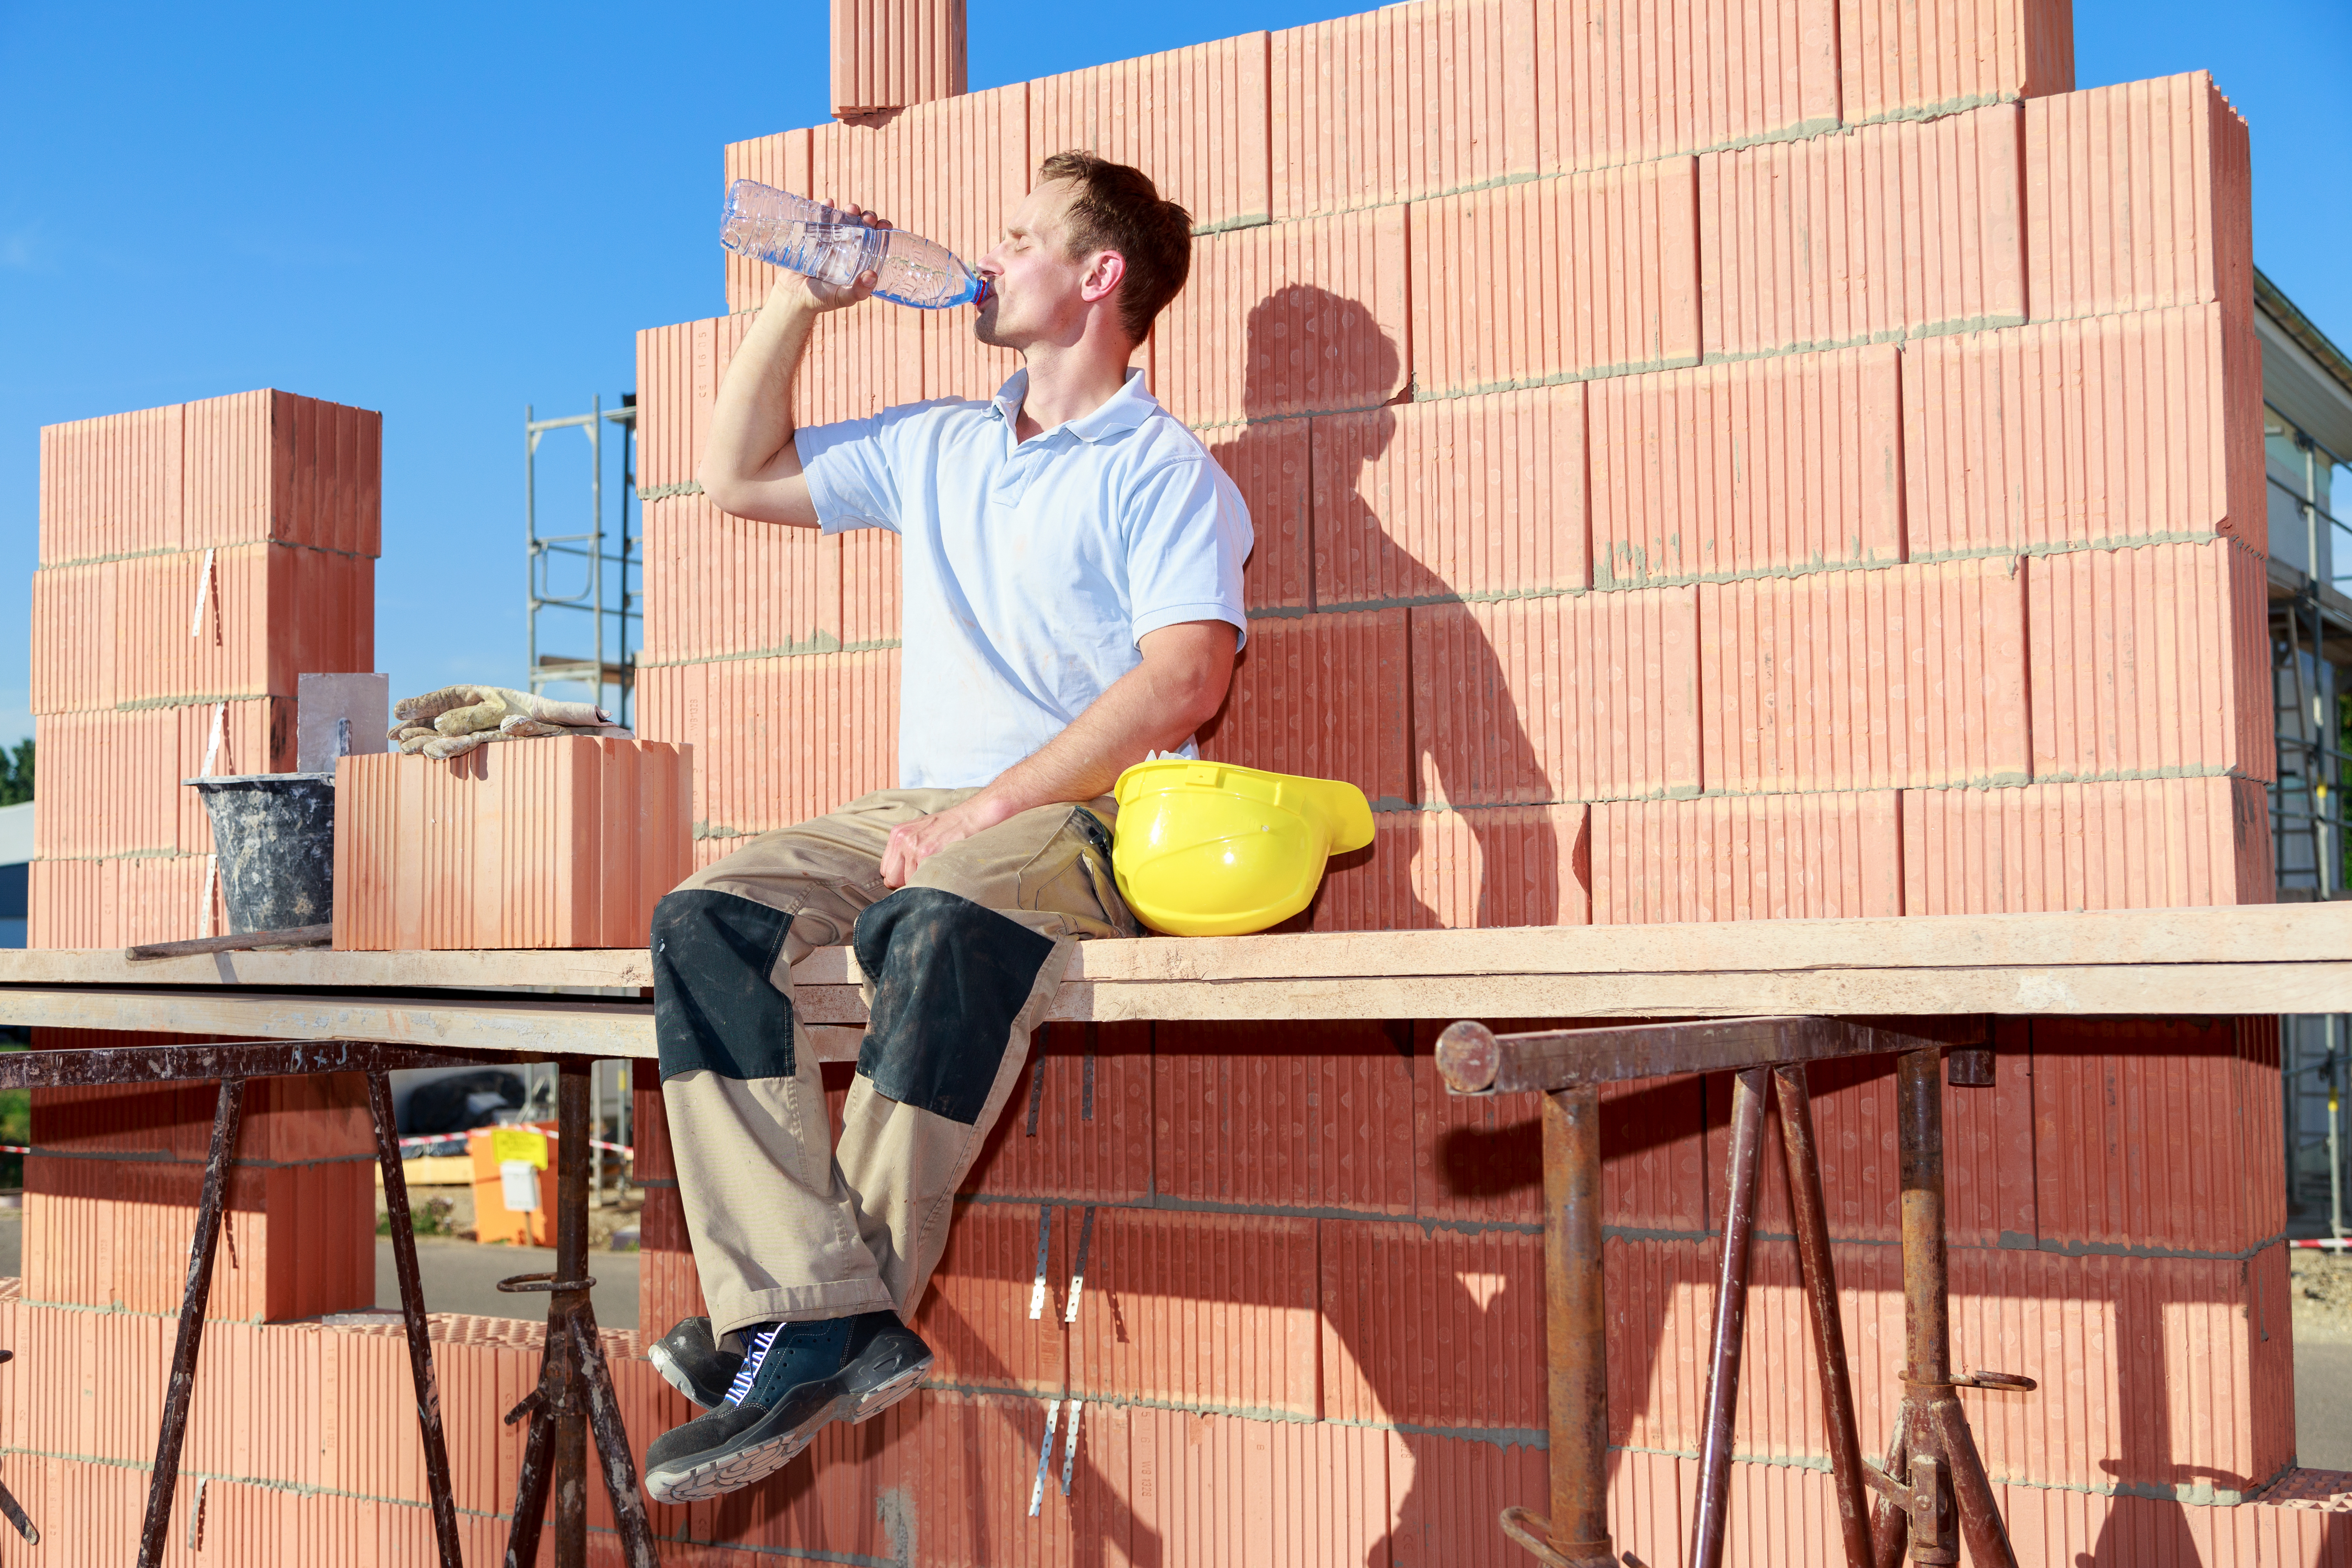 Bauarbeiter sitzt bei starkem Sonnenschein vor einer Mauer und trinkt Wasser.